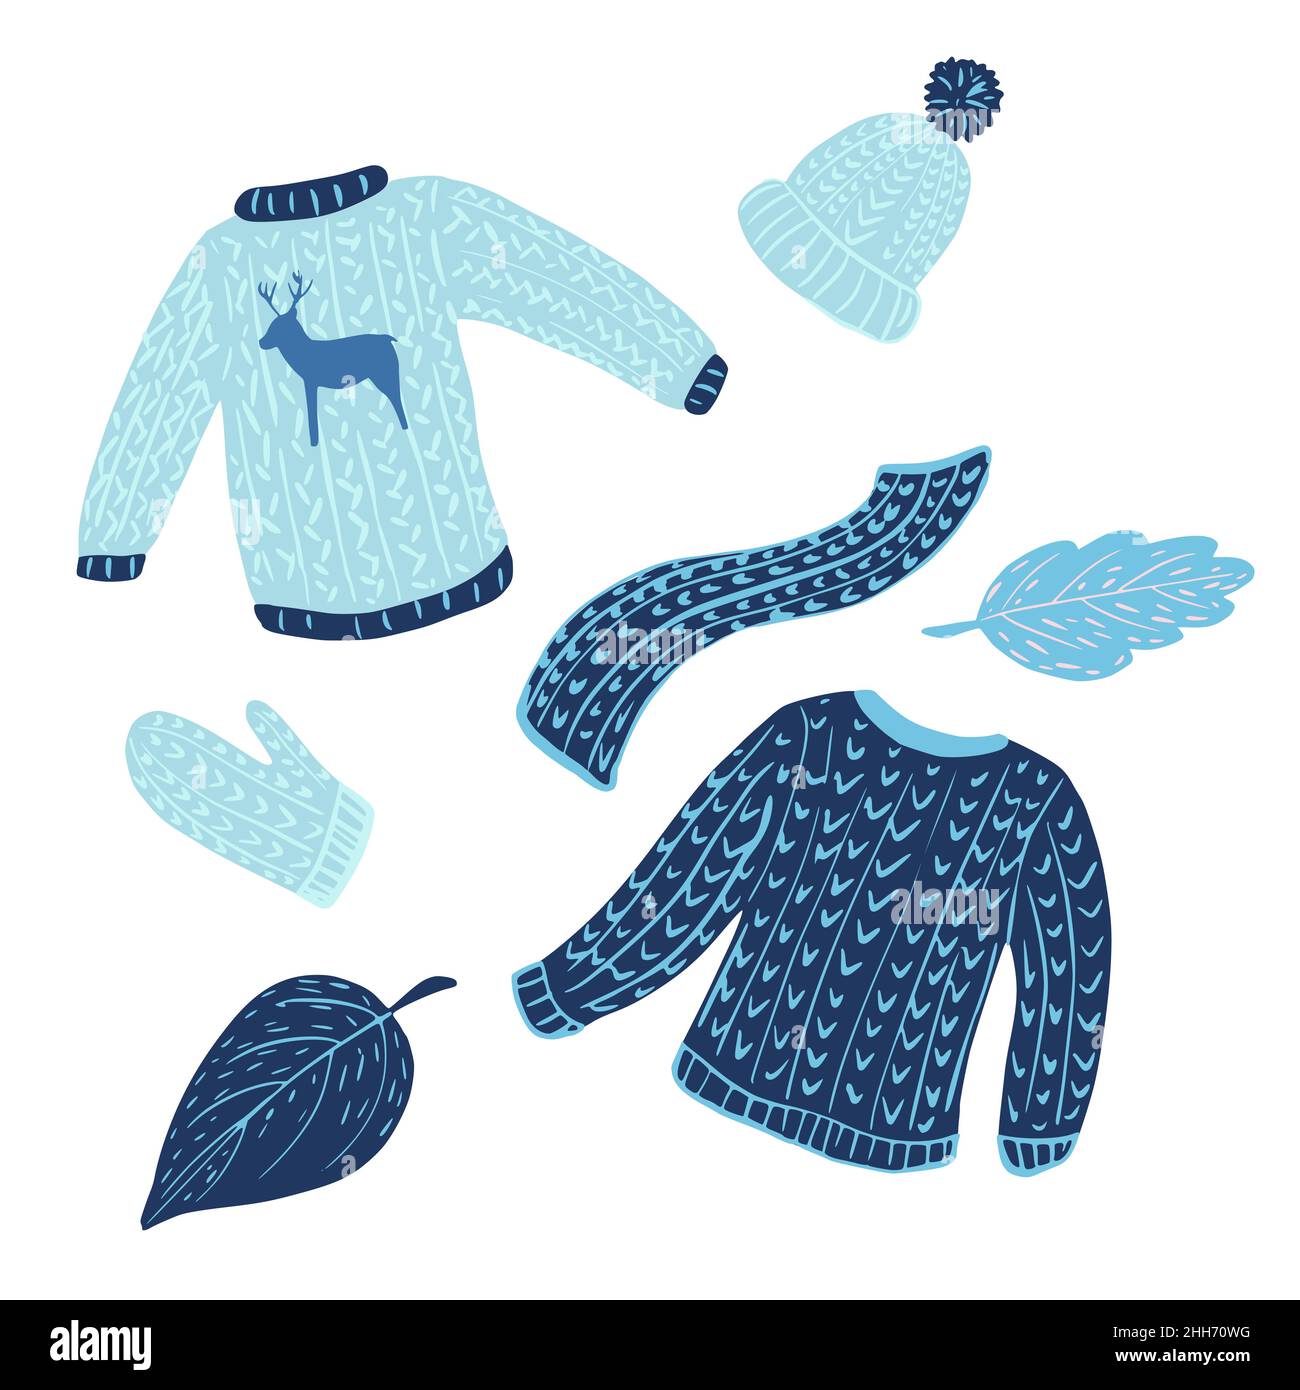 omposizione di maglioni, cappelli, sciarpe e foglie su sfondo bianco.  Abbigliamento invernale da maglione, foulard, cappellino, sciarpa e mano di  disegno fogliame Immagine e Vettoriale - Alamy